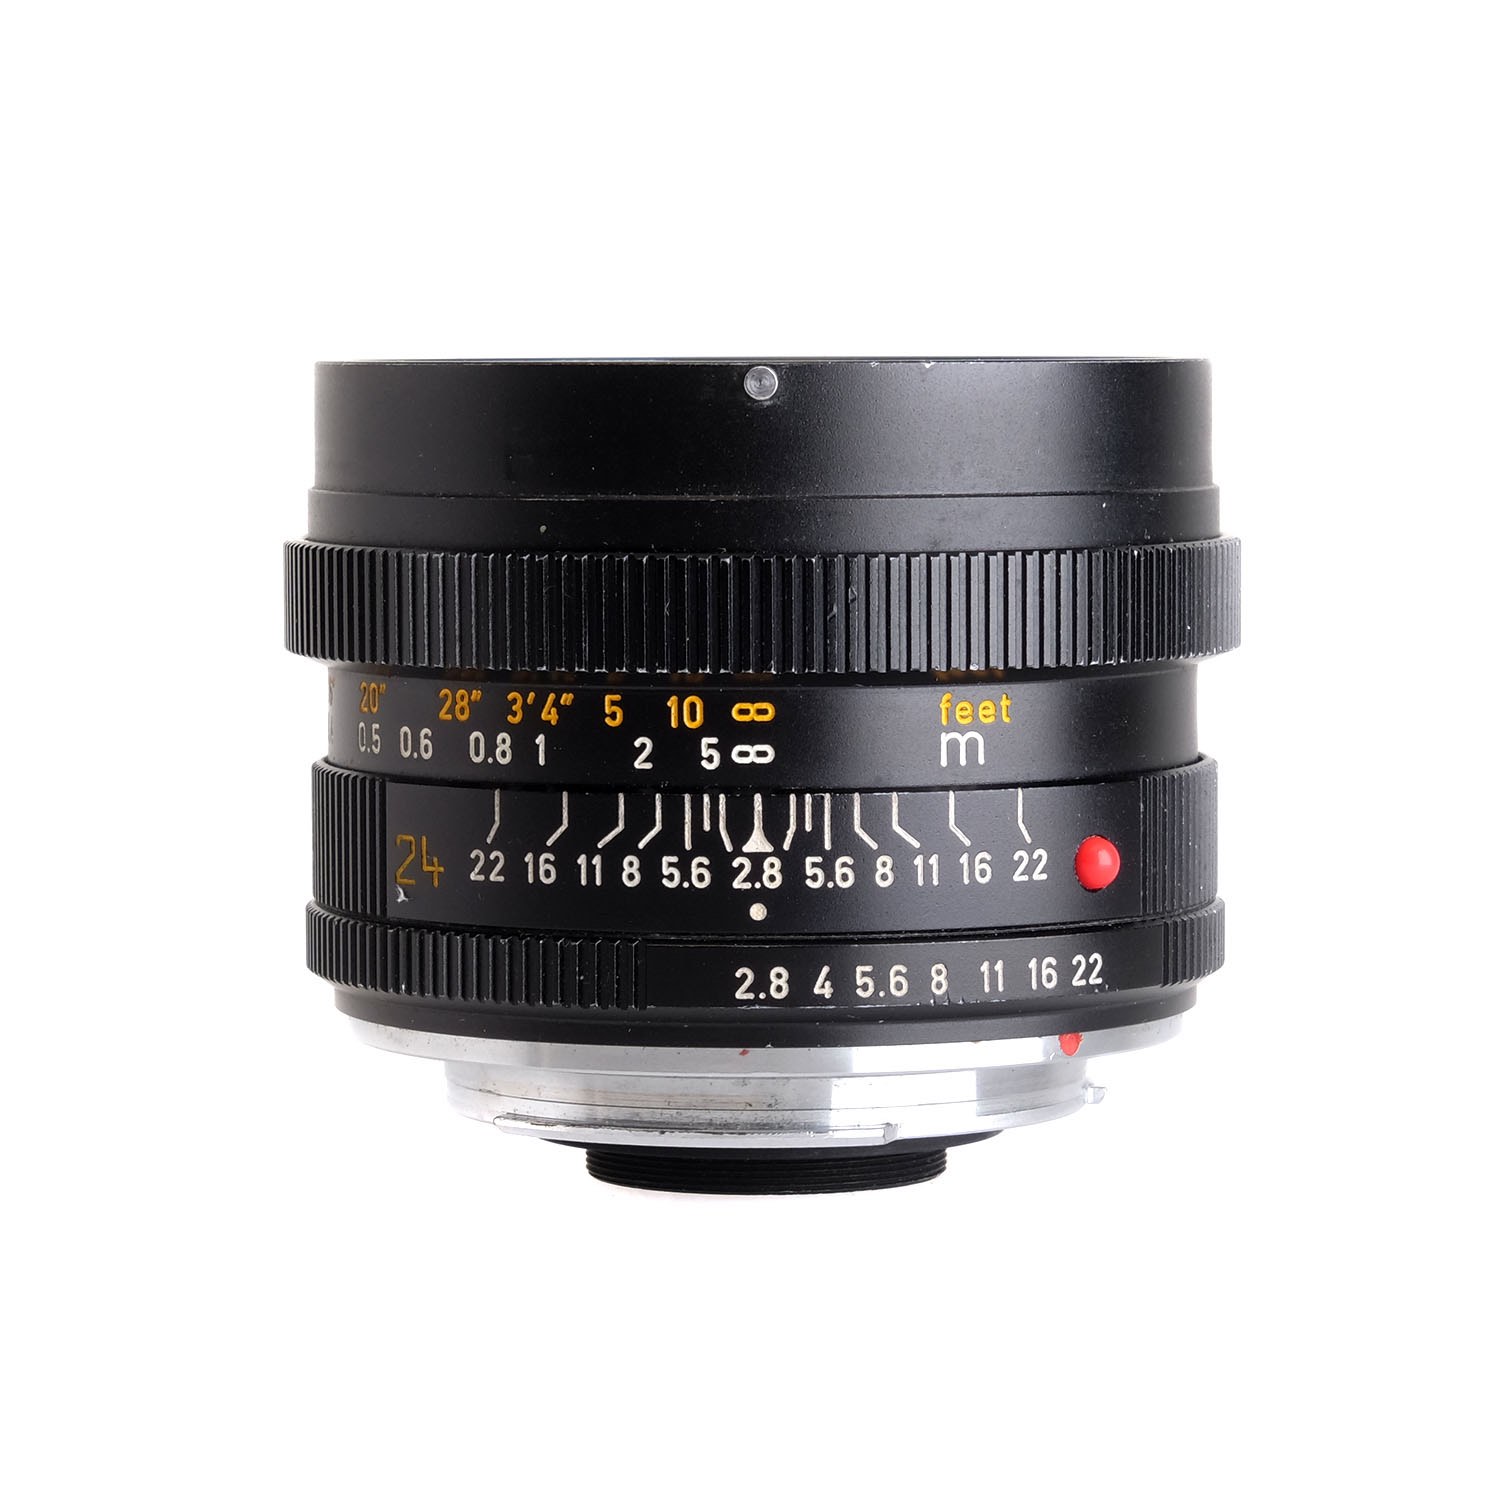 Leica Black Leather Lens Case for 28-70mm f3.5-4.5 Vario Elmar R Lenses 